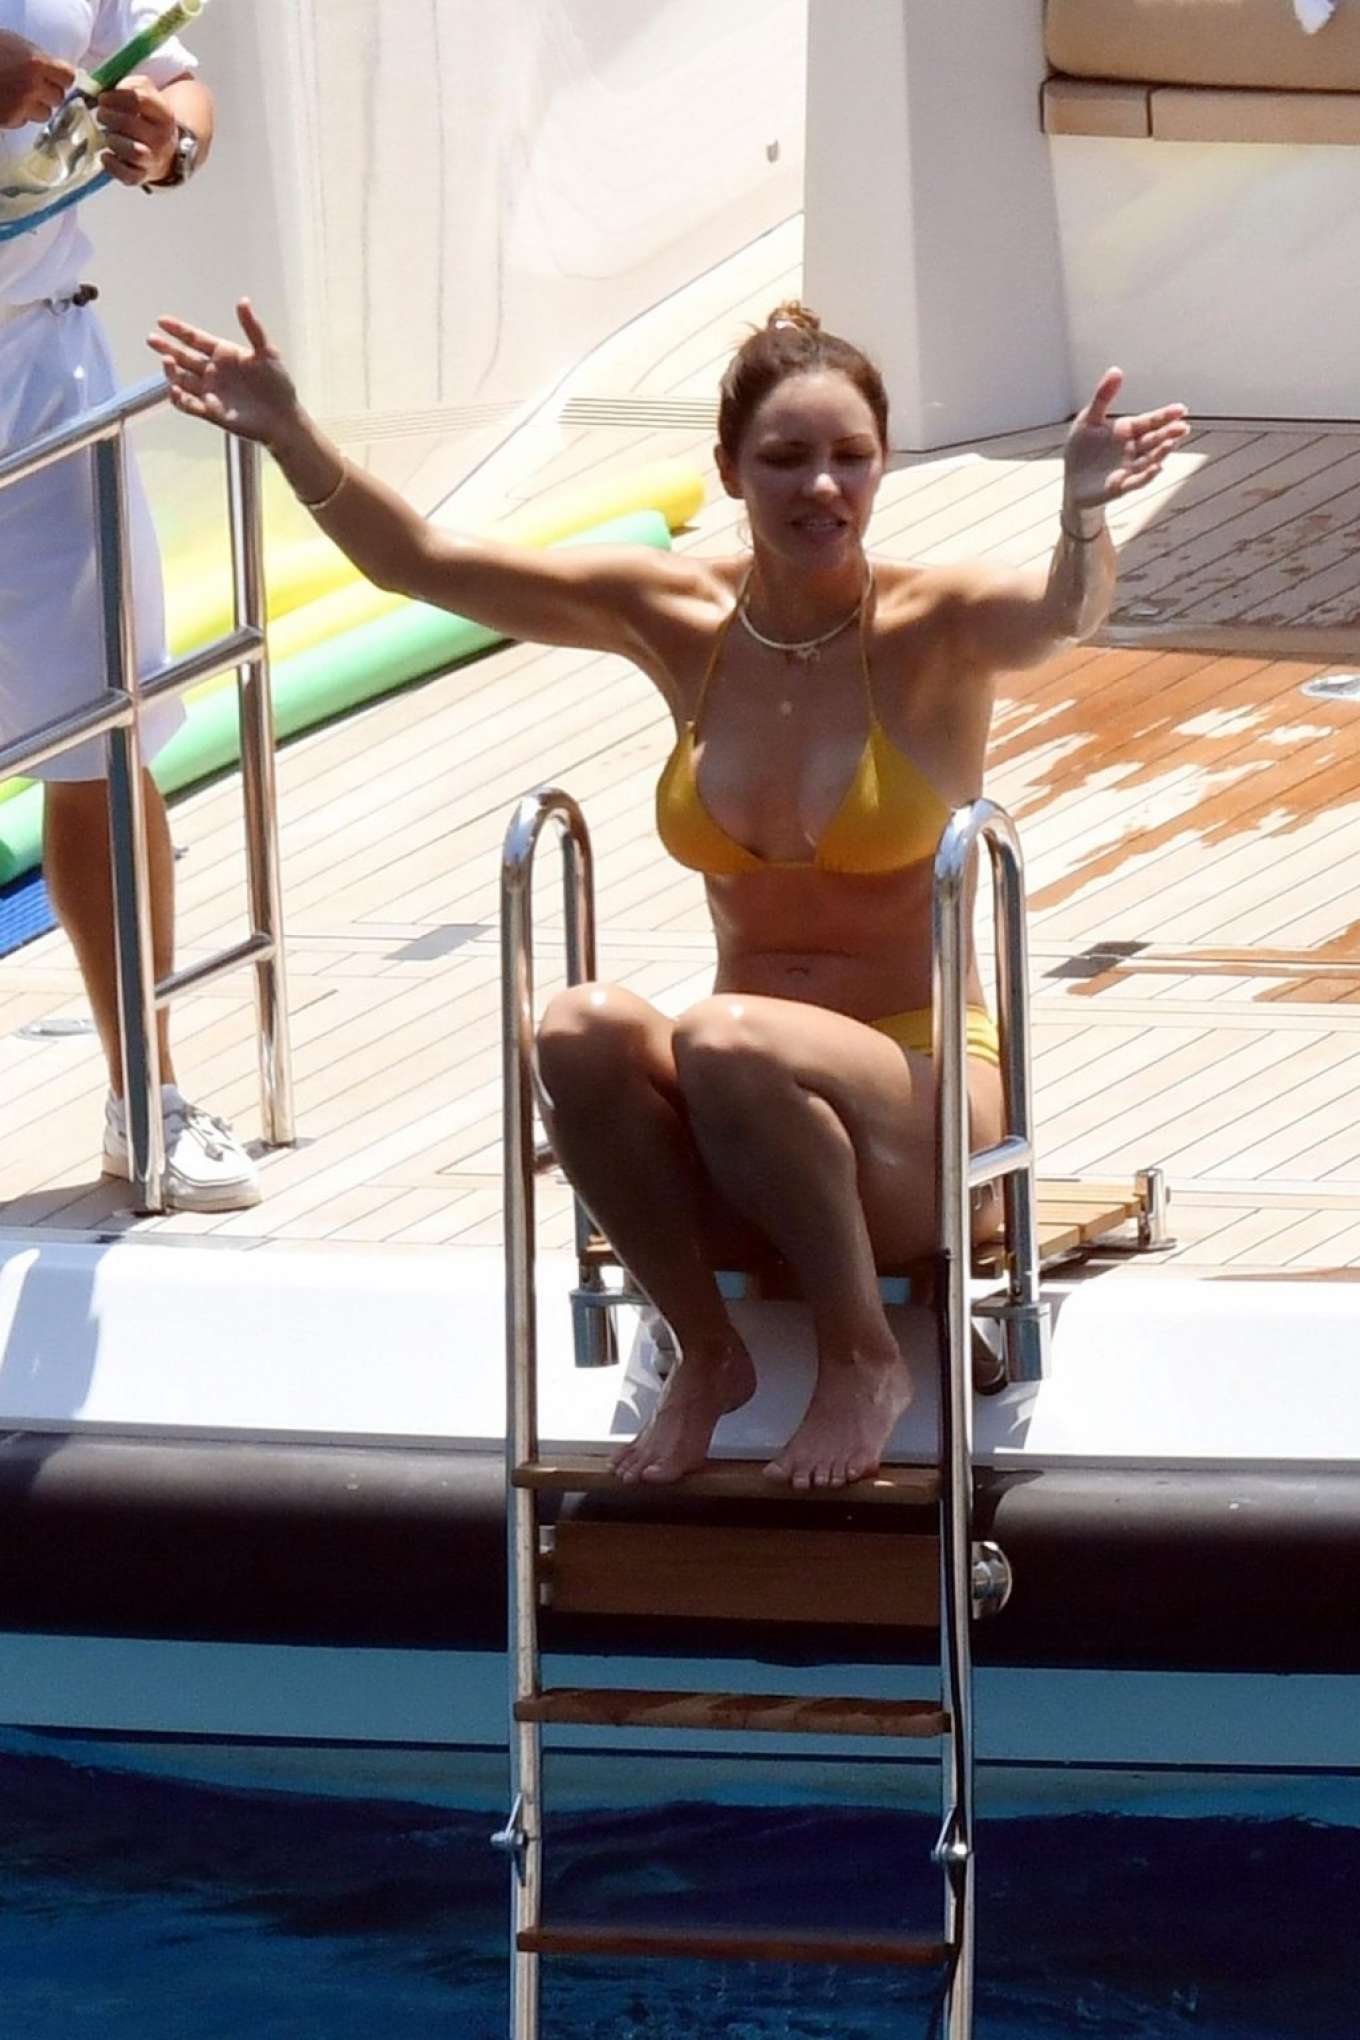 Katharine McPhee in Yellow Bikini on a yacht in Capri